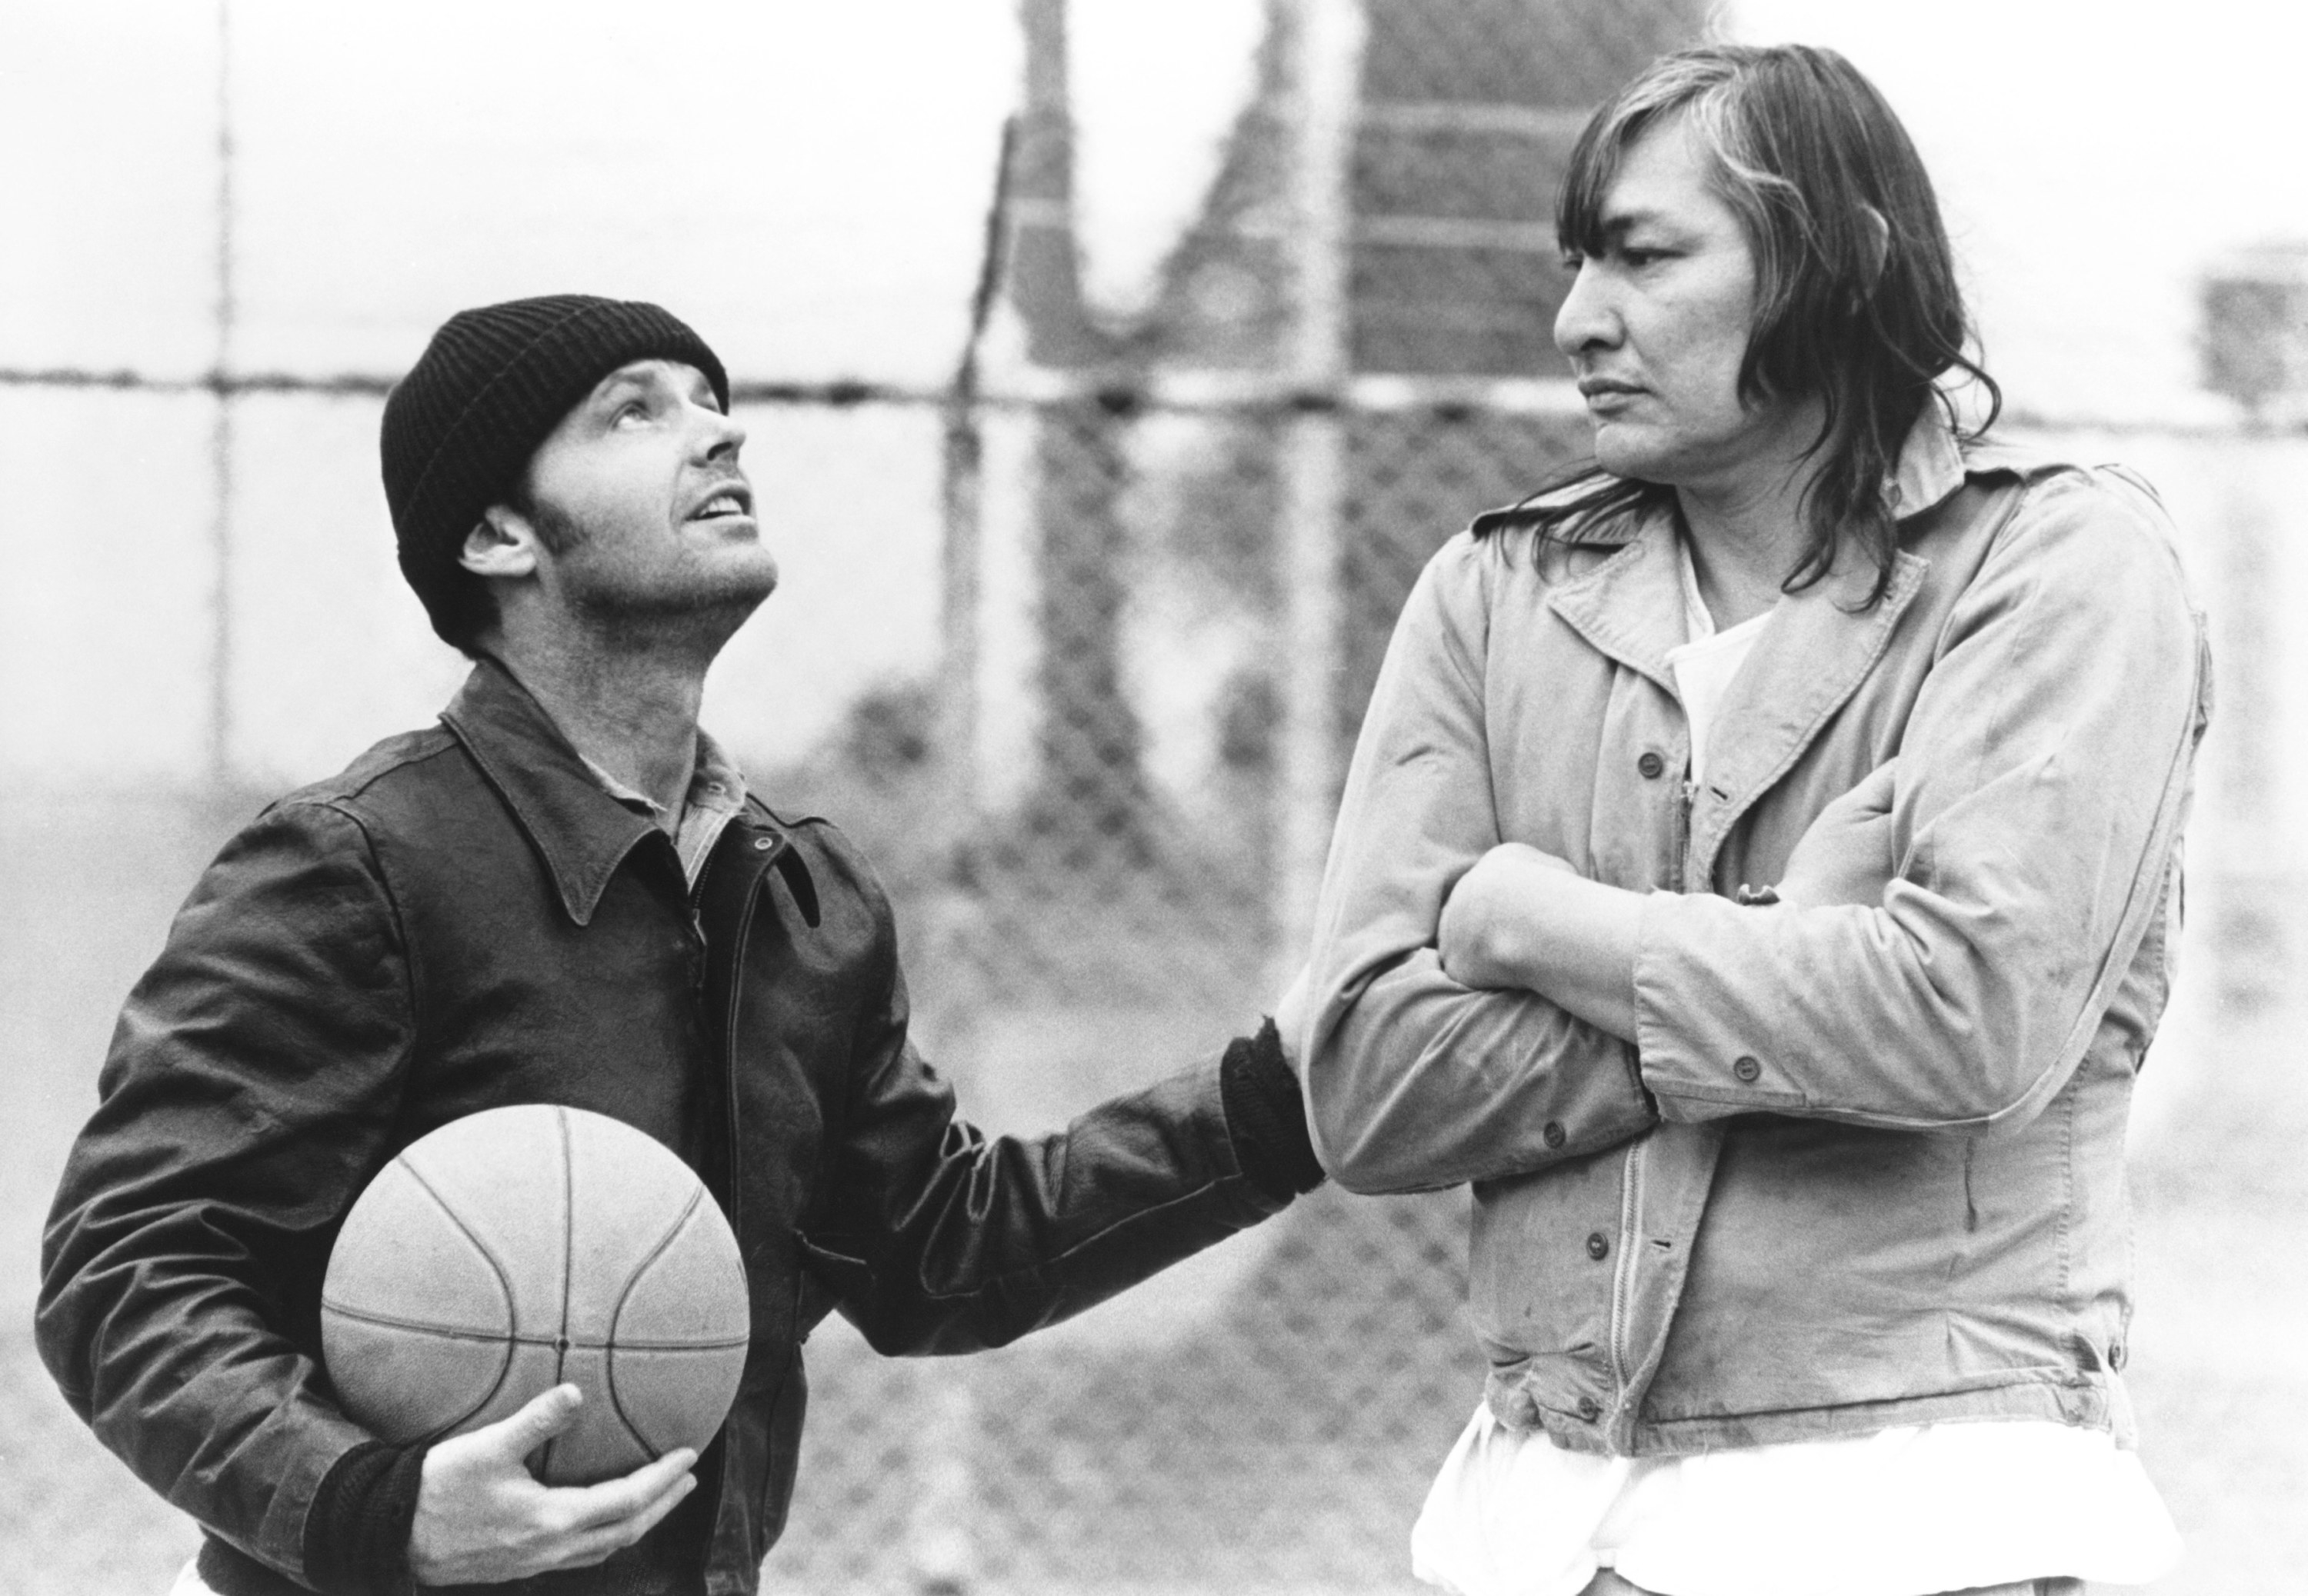 Chief and Randle playing basketball